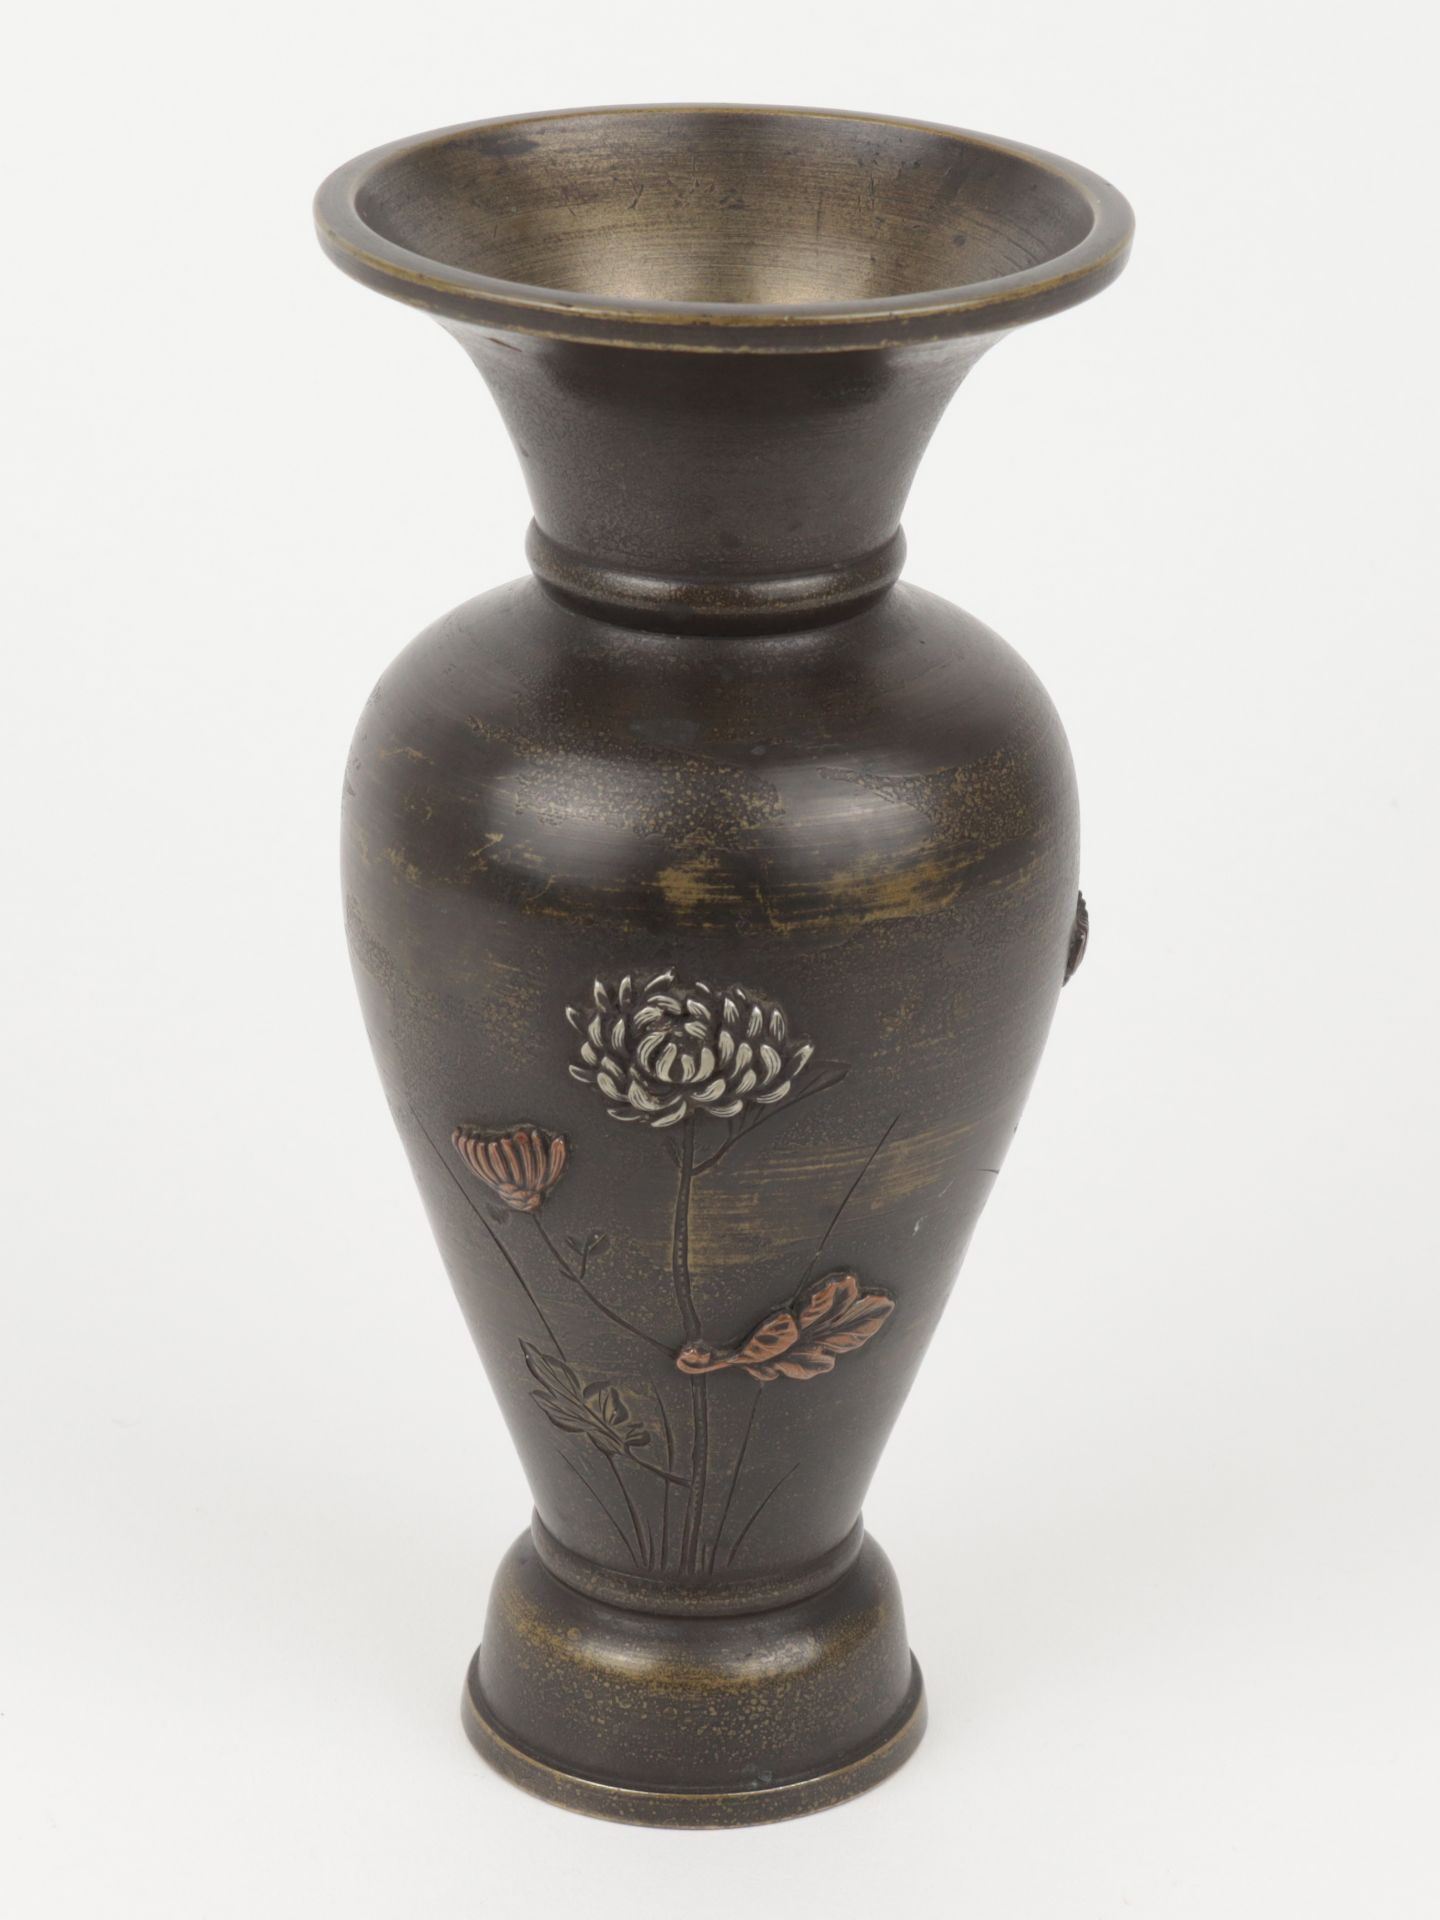 Vase um 1900, Japan, Bronze, reliefiert, Ritzdekor u. Metallauflagen in Kupfer, Messing u. a., - Bild 2 aus 5